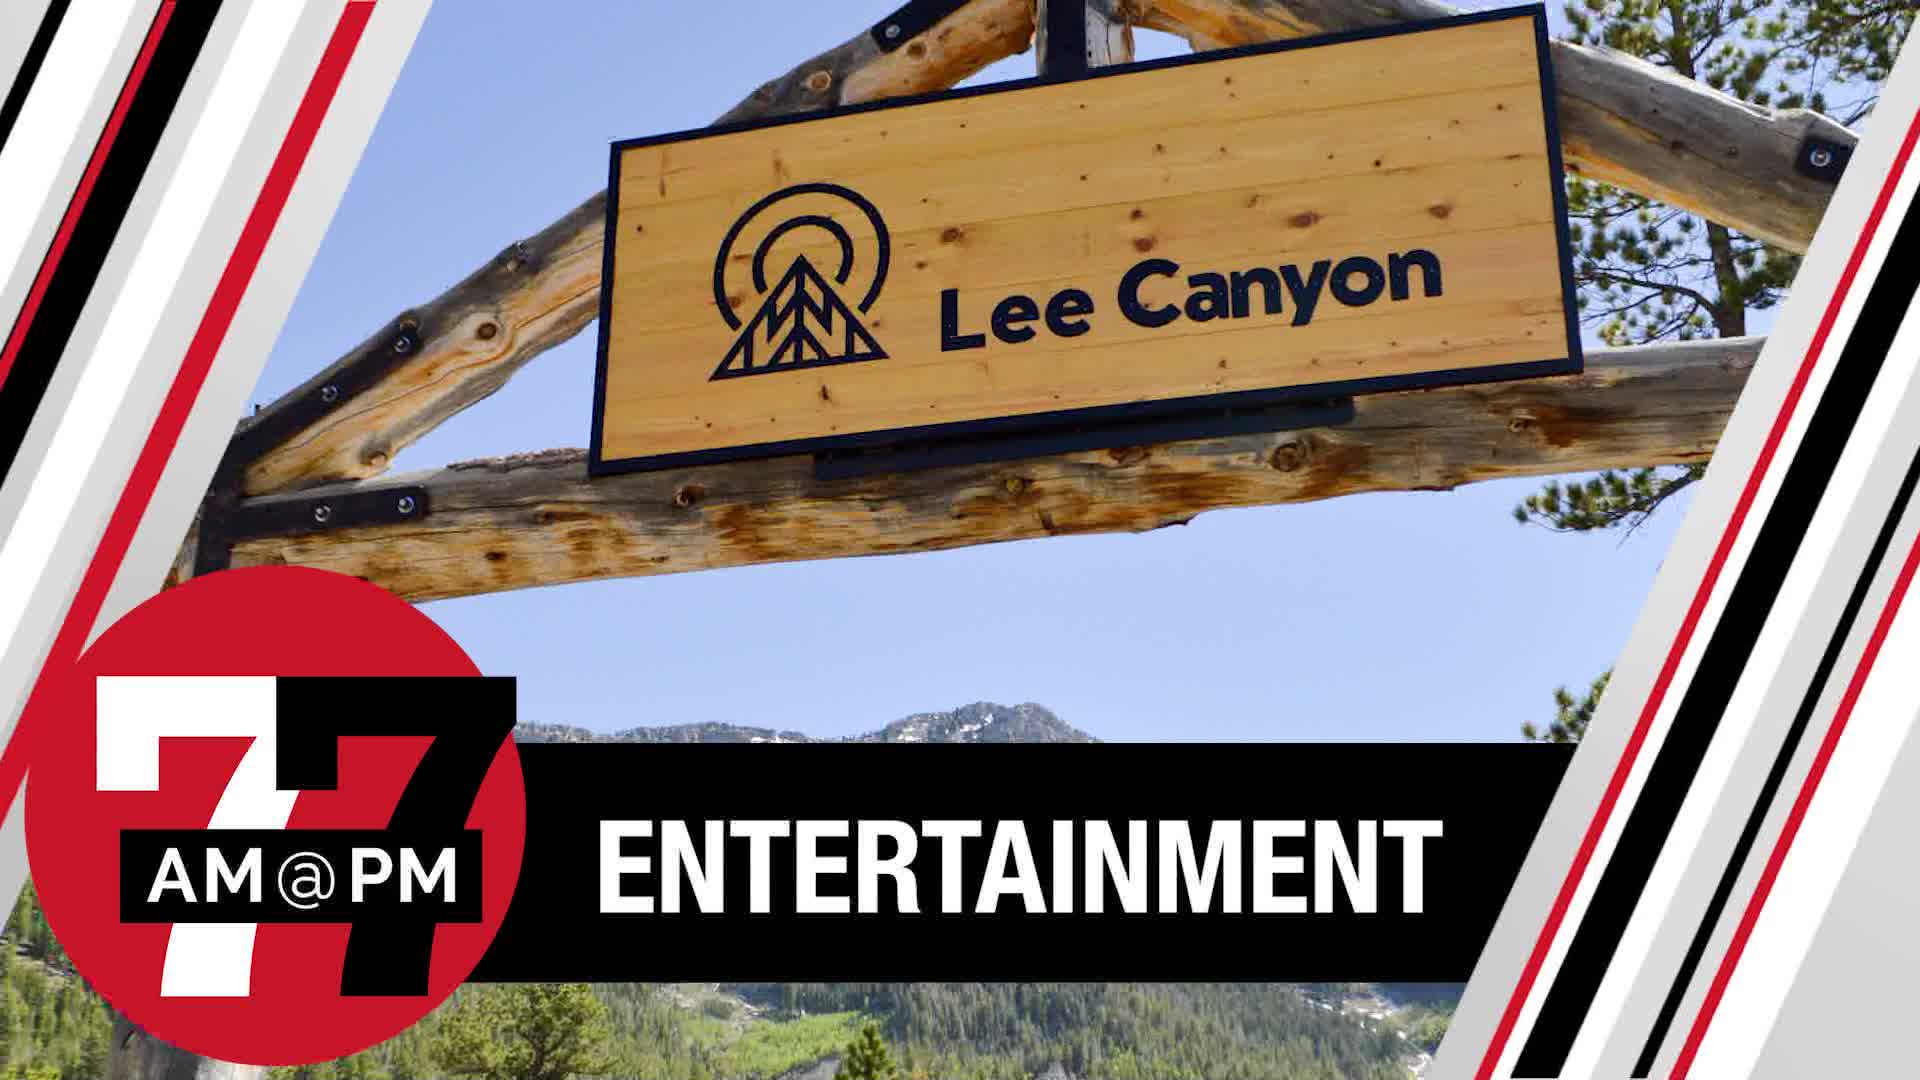 Lee Canyon open Friday through Monday